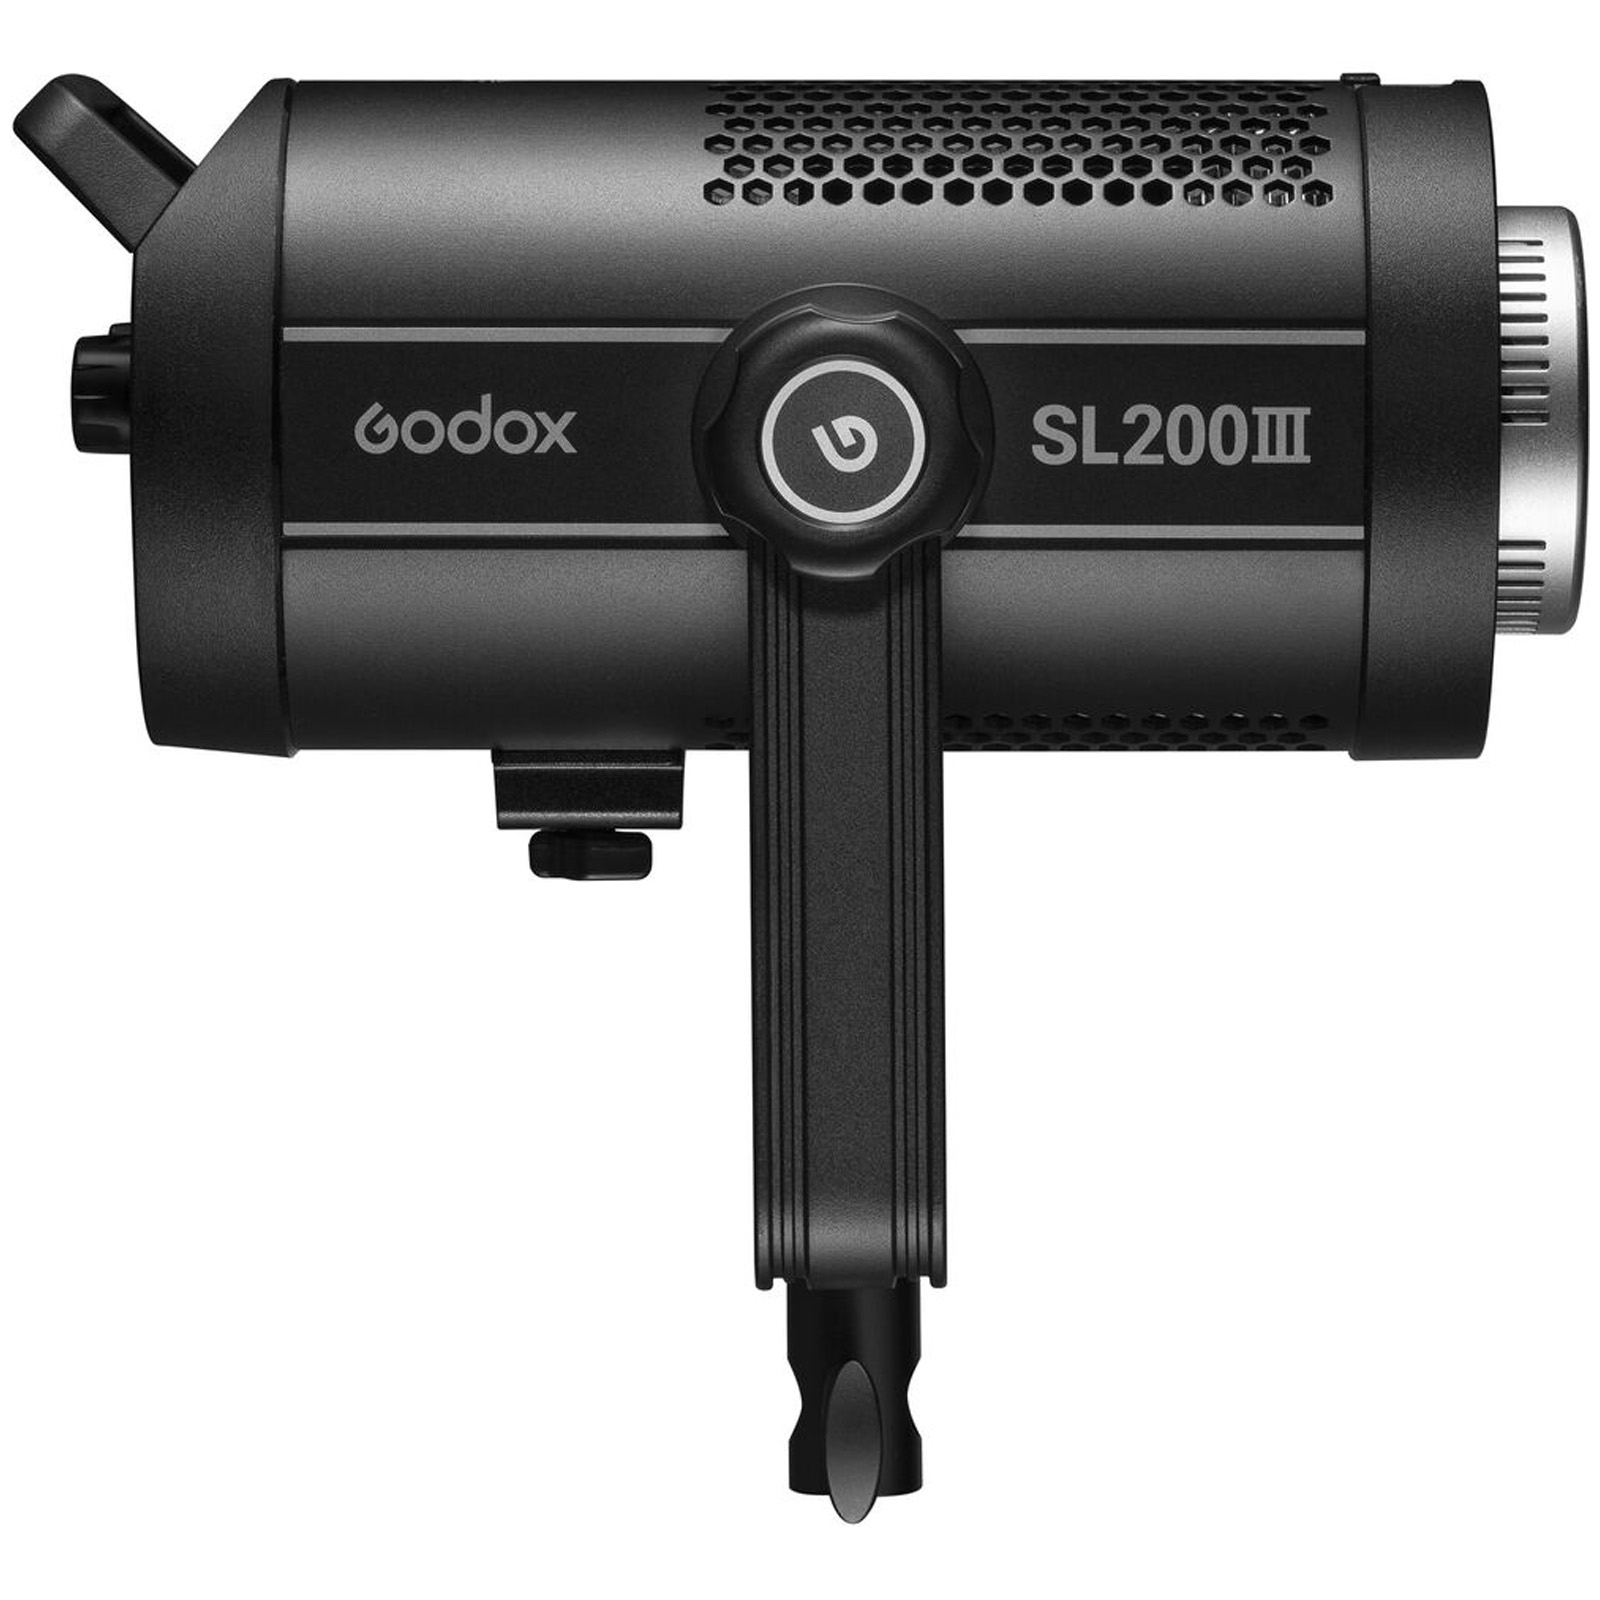 Image of Godox SL200III LED Light Daylight